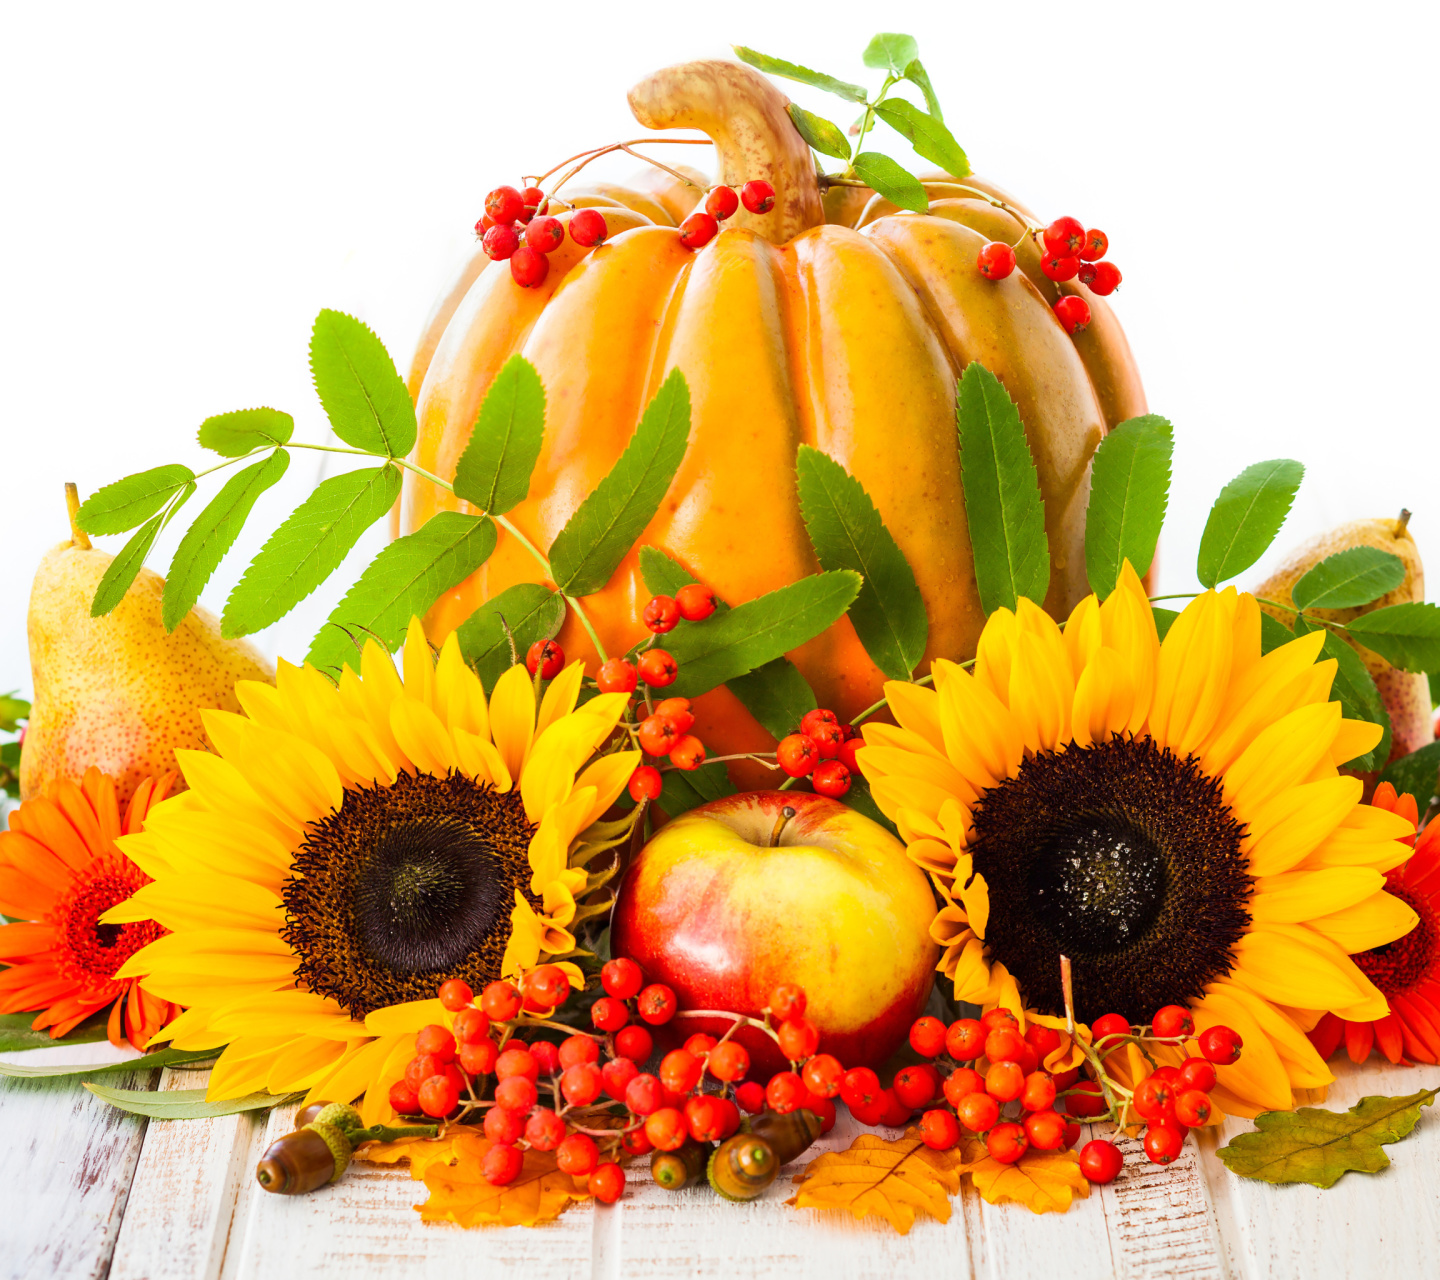 Harvest Pumpkin and Sunflowers screenshot #1 1440x1280